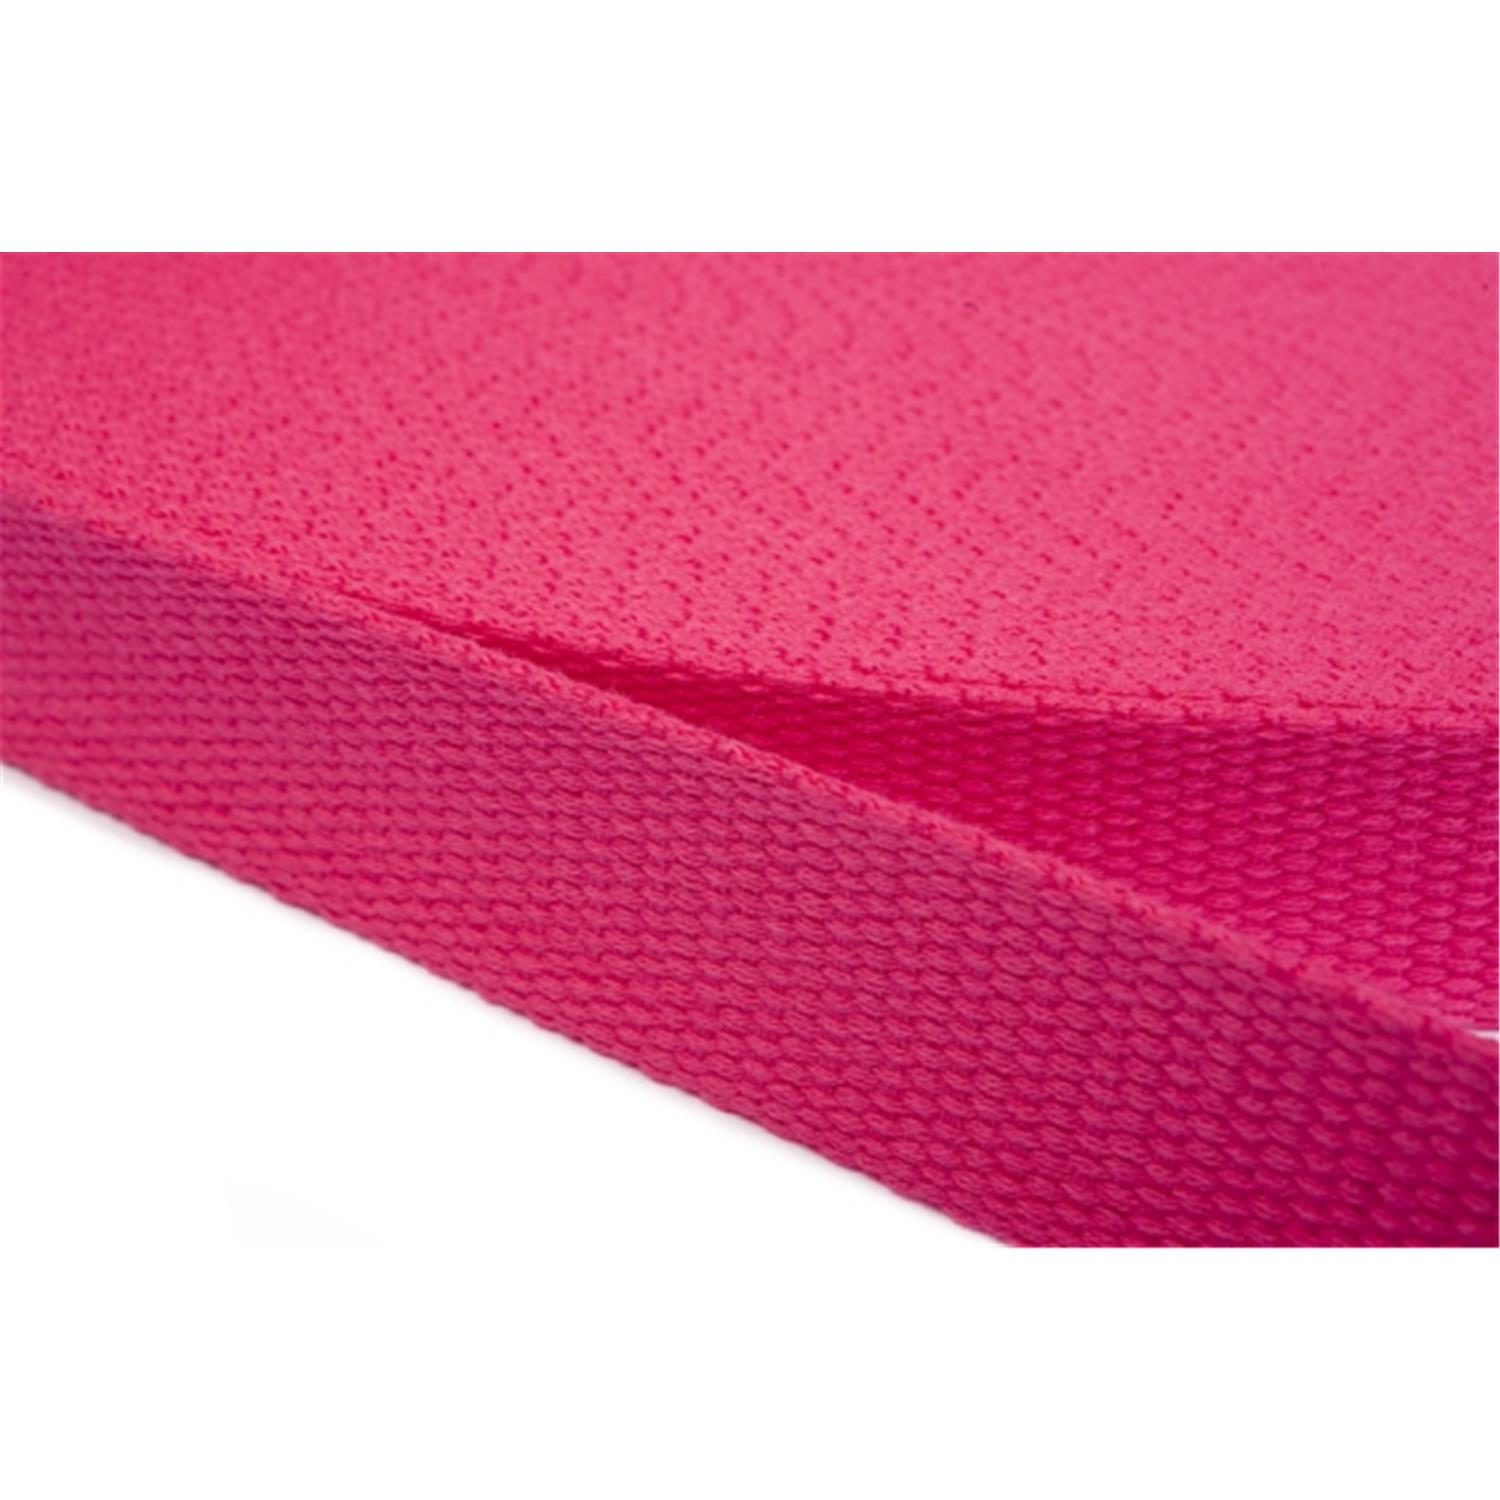 Gurtband aus Baumwolle 50mm in 20 Farben 07 - rosa/pink 6 Meter